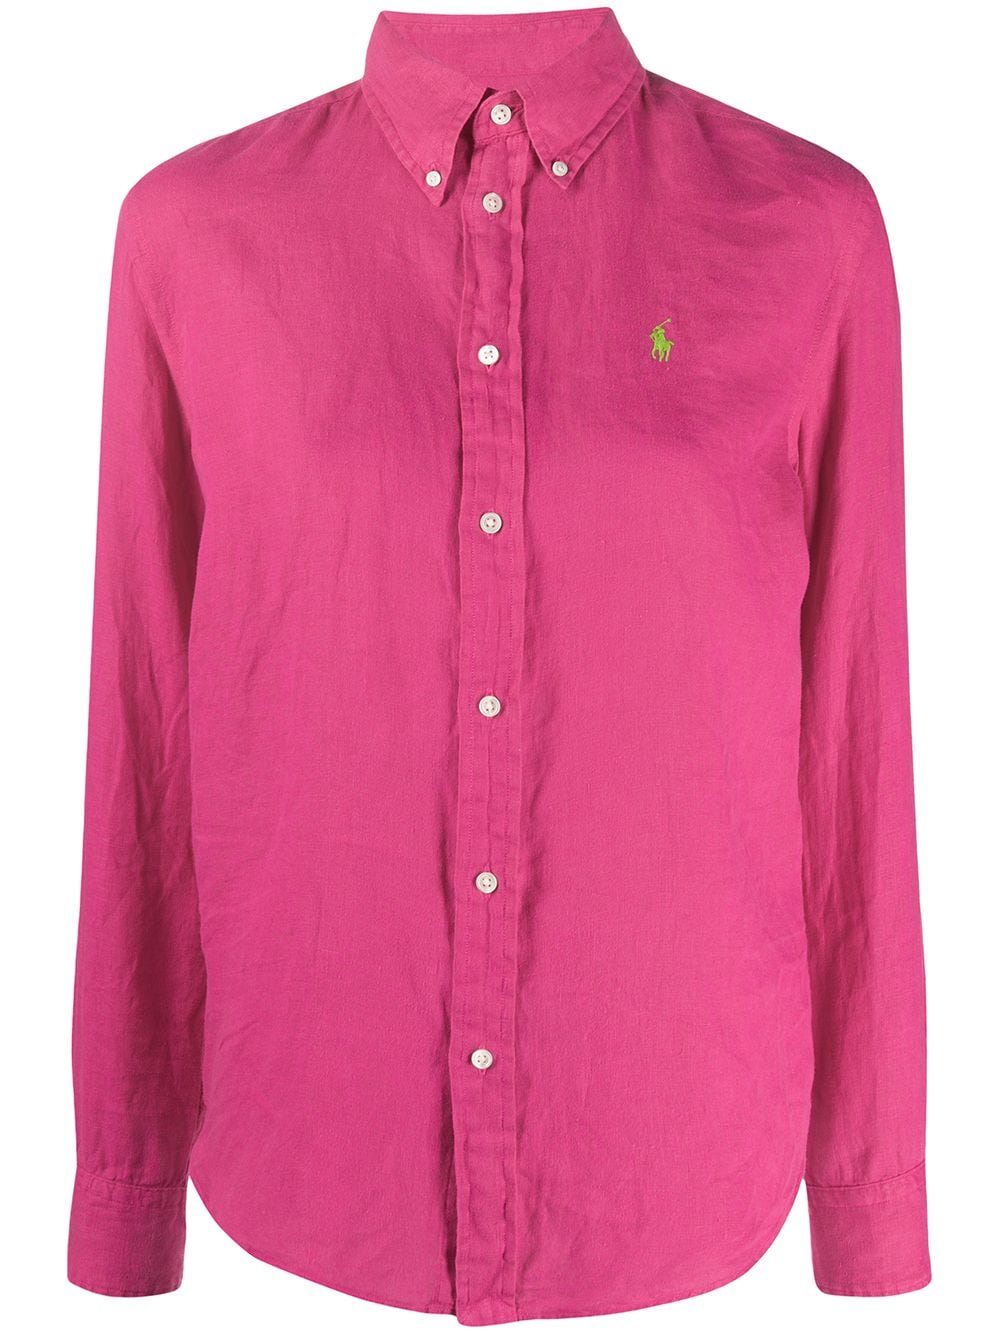 Polo Ralph Lauren Pink Button-down Logo Shirt | eBay